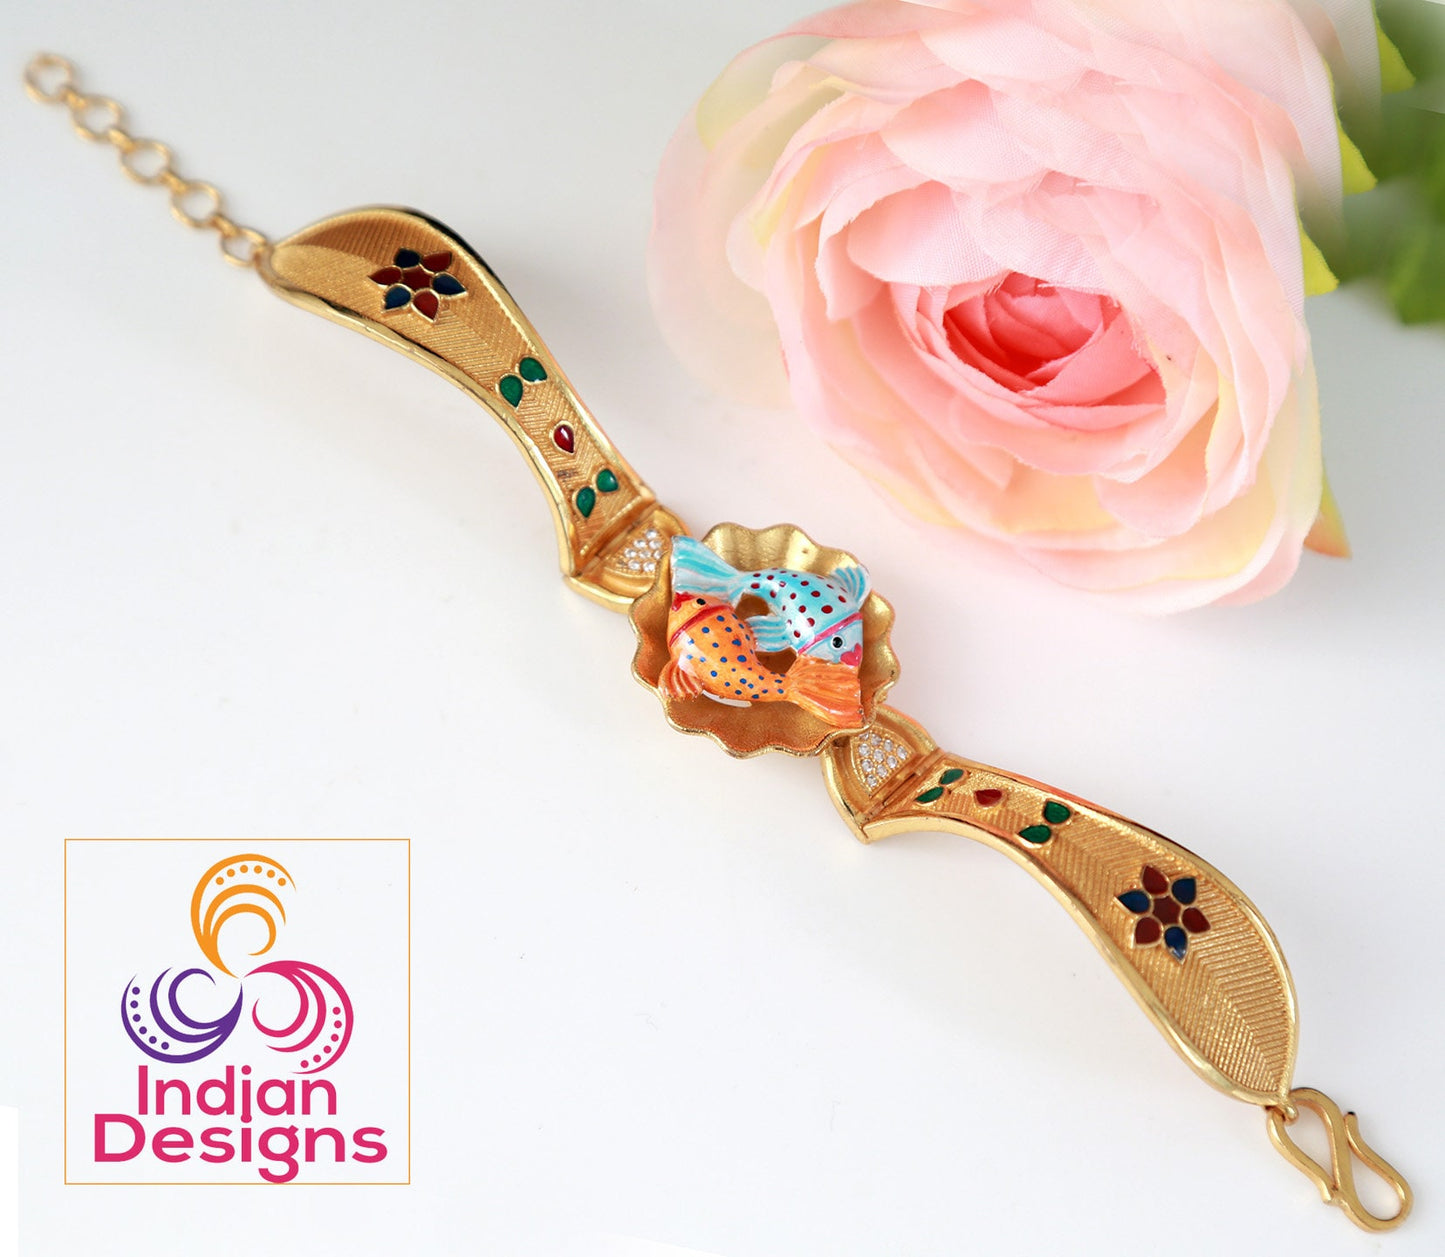 Gold plated bracelet for women | Traditional indian bracelets | Antique Gold tone bracelet designs | Indian jewelry bangle bracelets designs